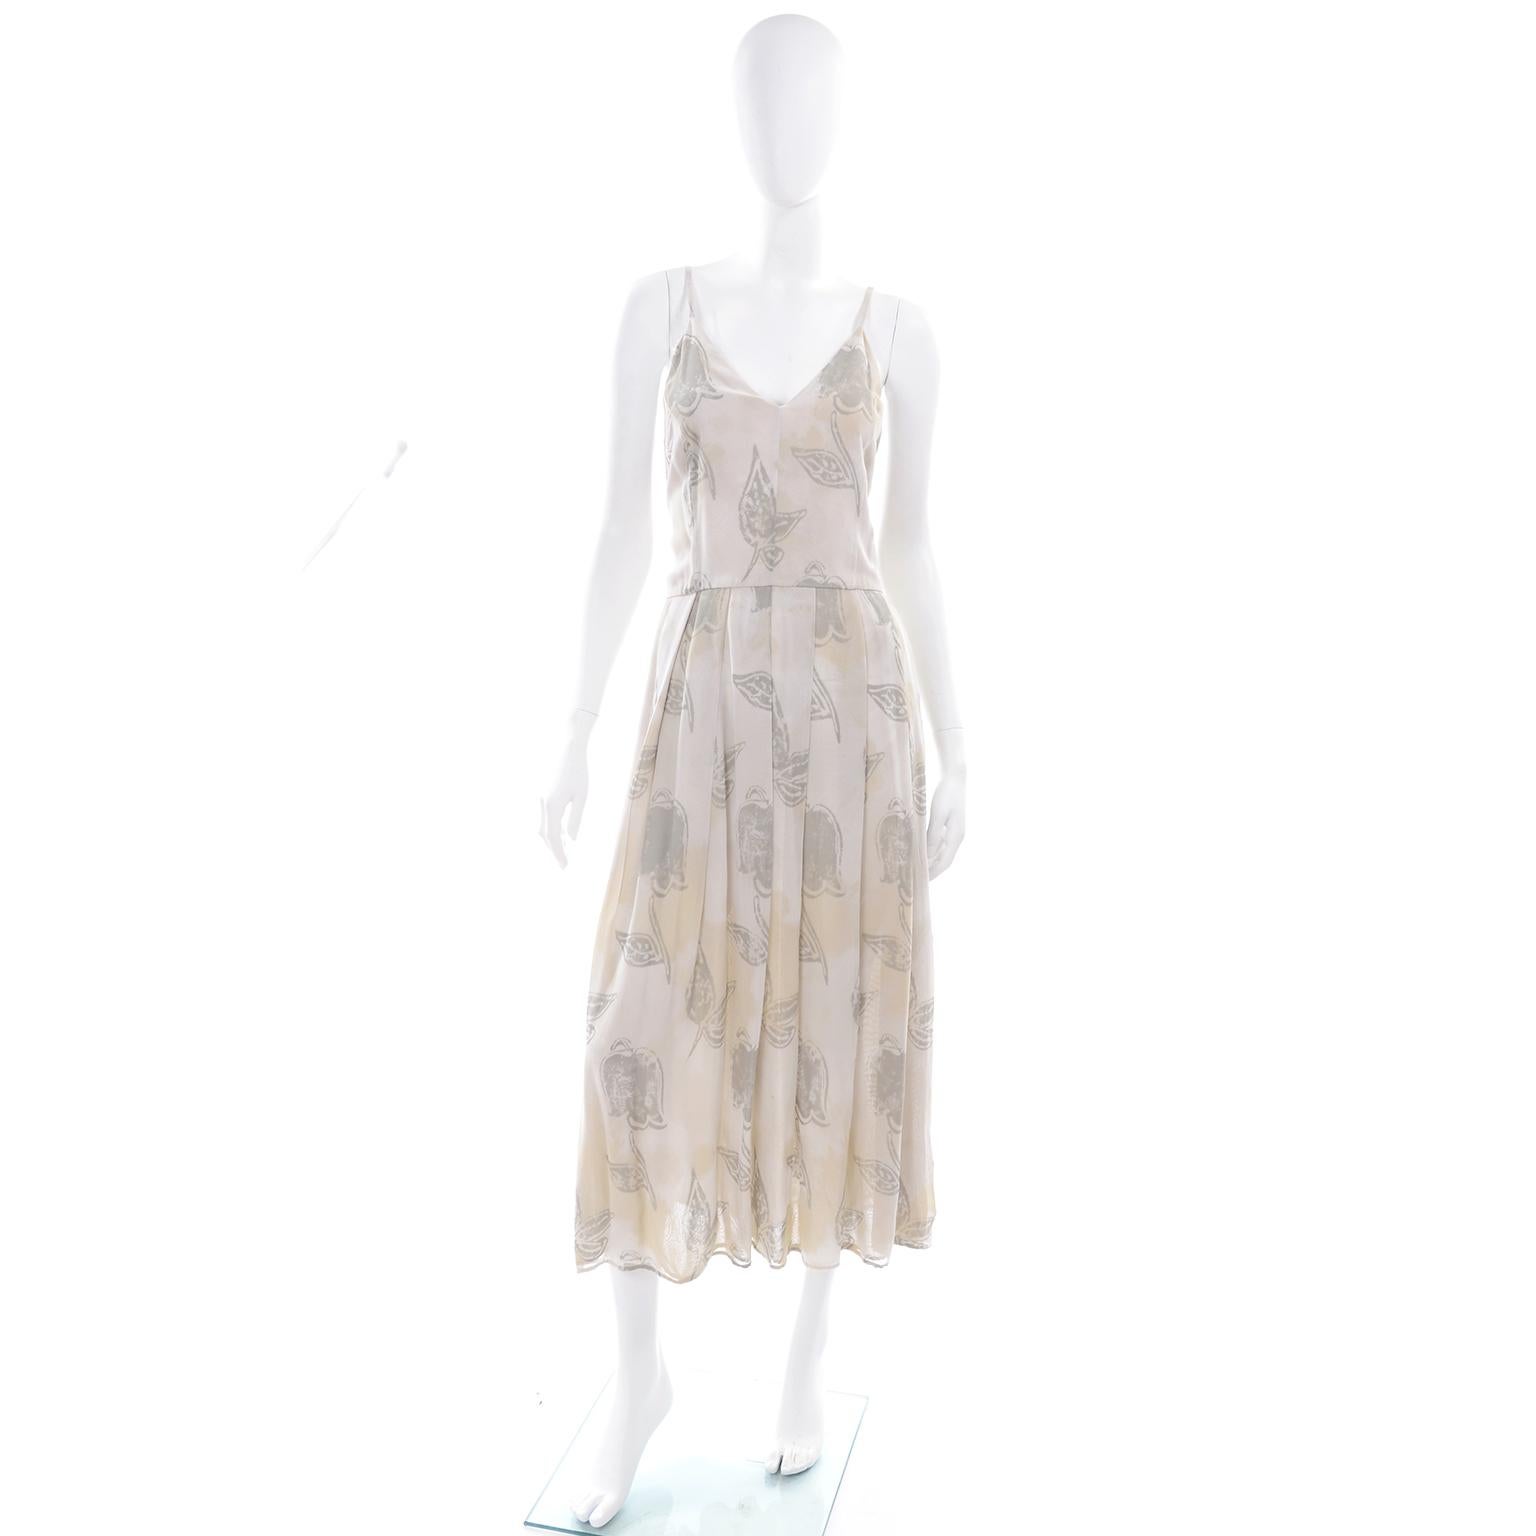 Dies ist ein einzigartiges Vintage Giorgio Armani blass khaki creme und salbeigrün Kleid in einem Muster, das abstrakte Blätter und gezielte Farbschichtung, die fast wie Tee Flecken aussieht. Dieses Kleid hat vorne einen V-Ausschnitt und hinten ein